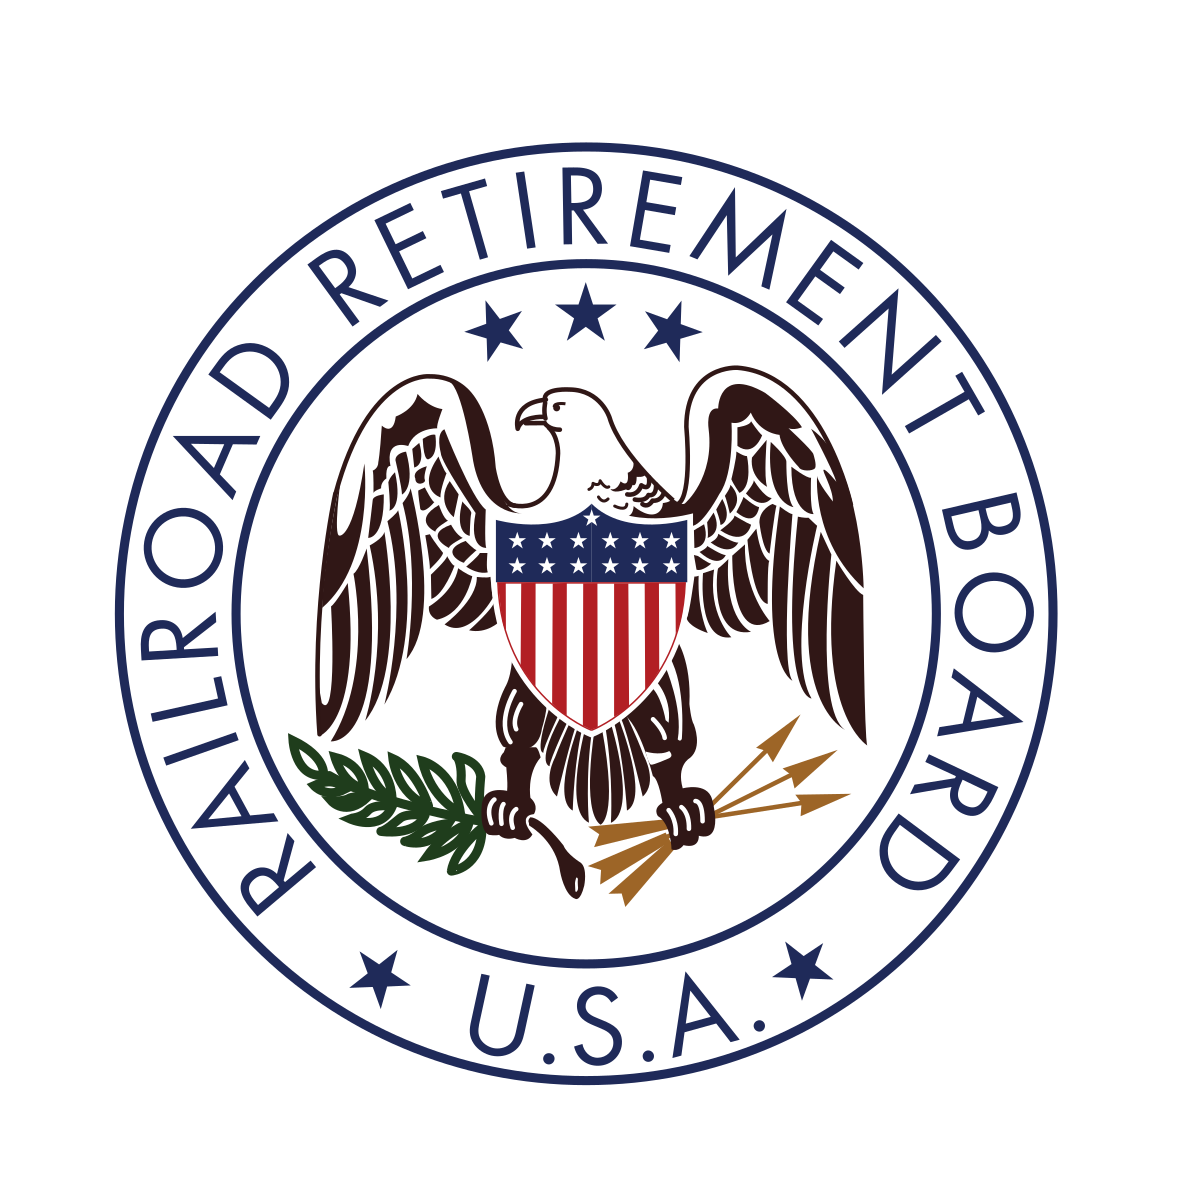 Railroad Retirement Board (RRB)